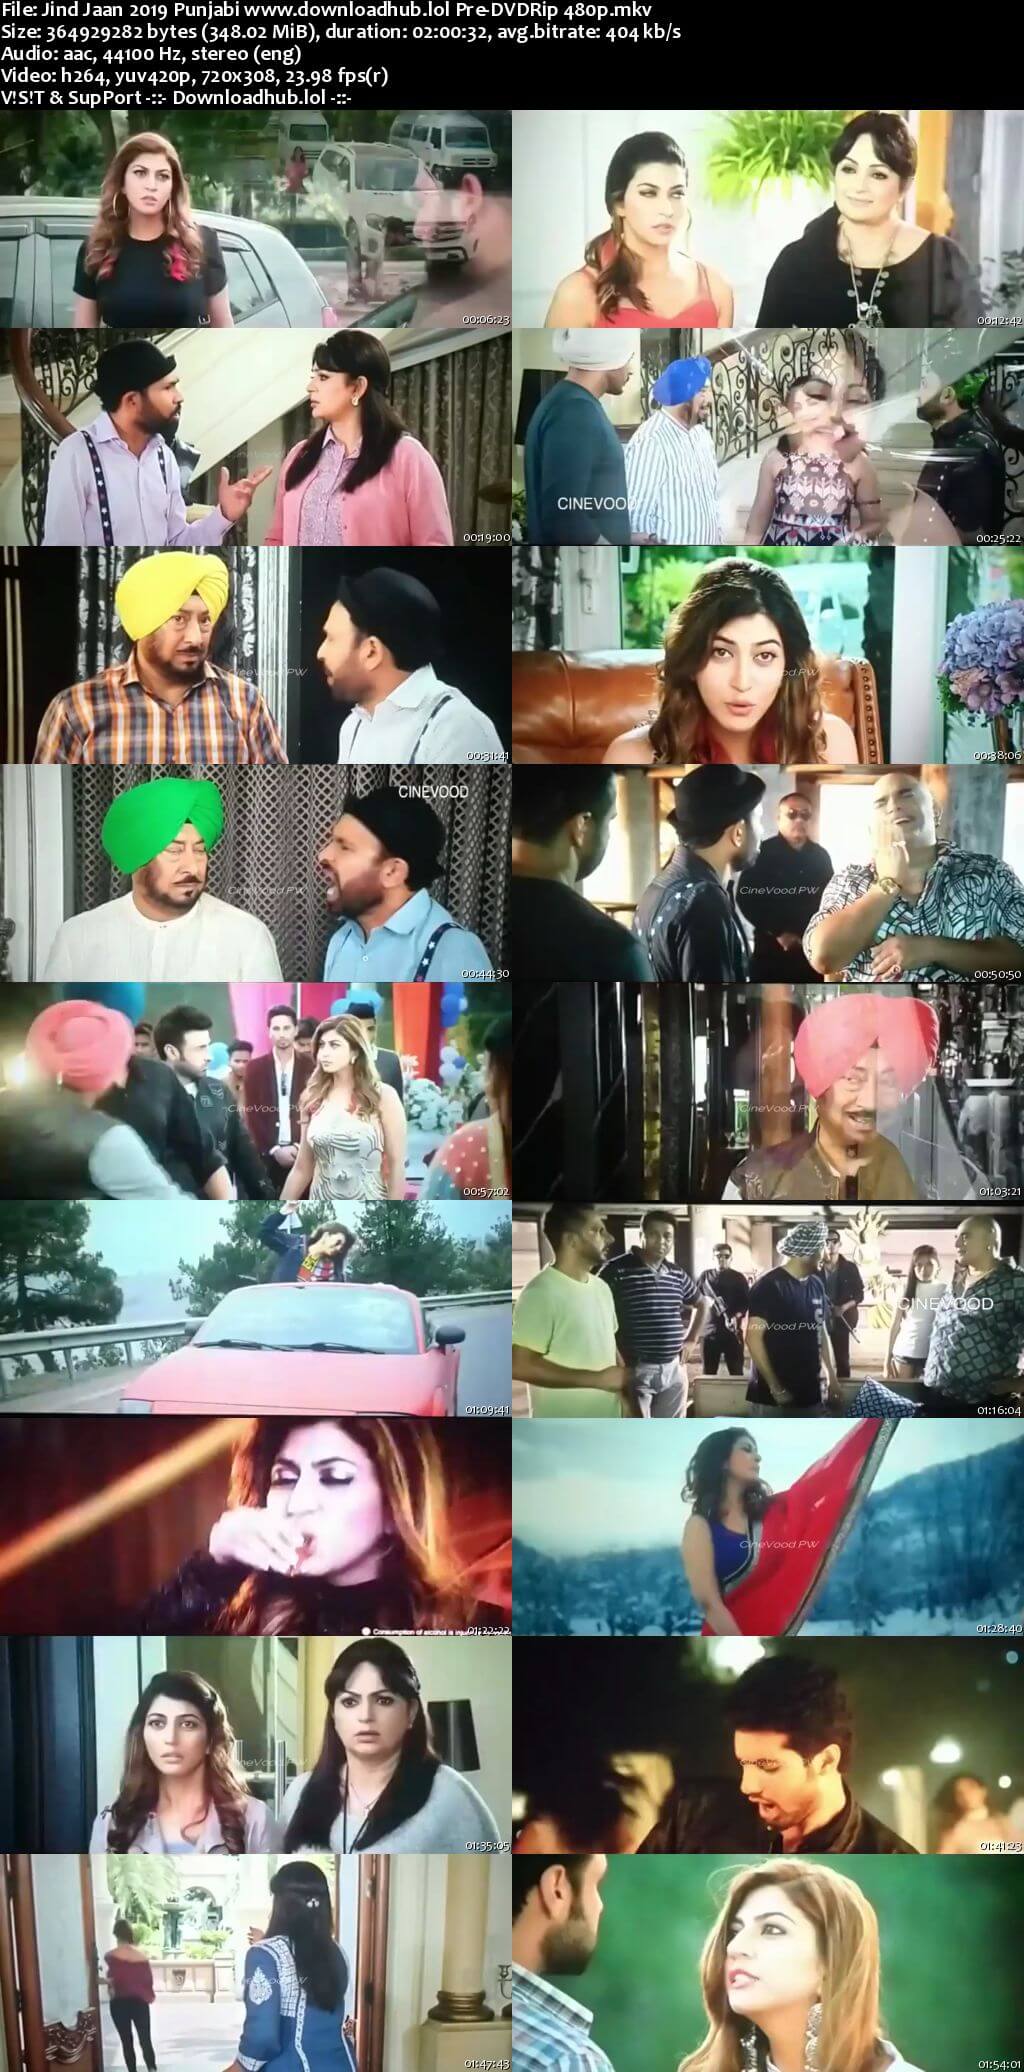 Jind Jaan 2019 Punjabi 350MB Pre-DVDRip 480p